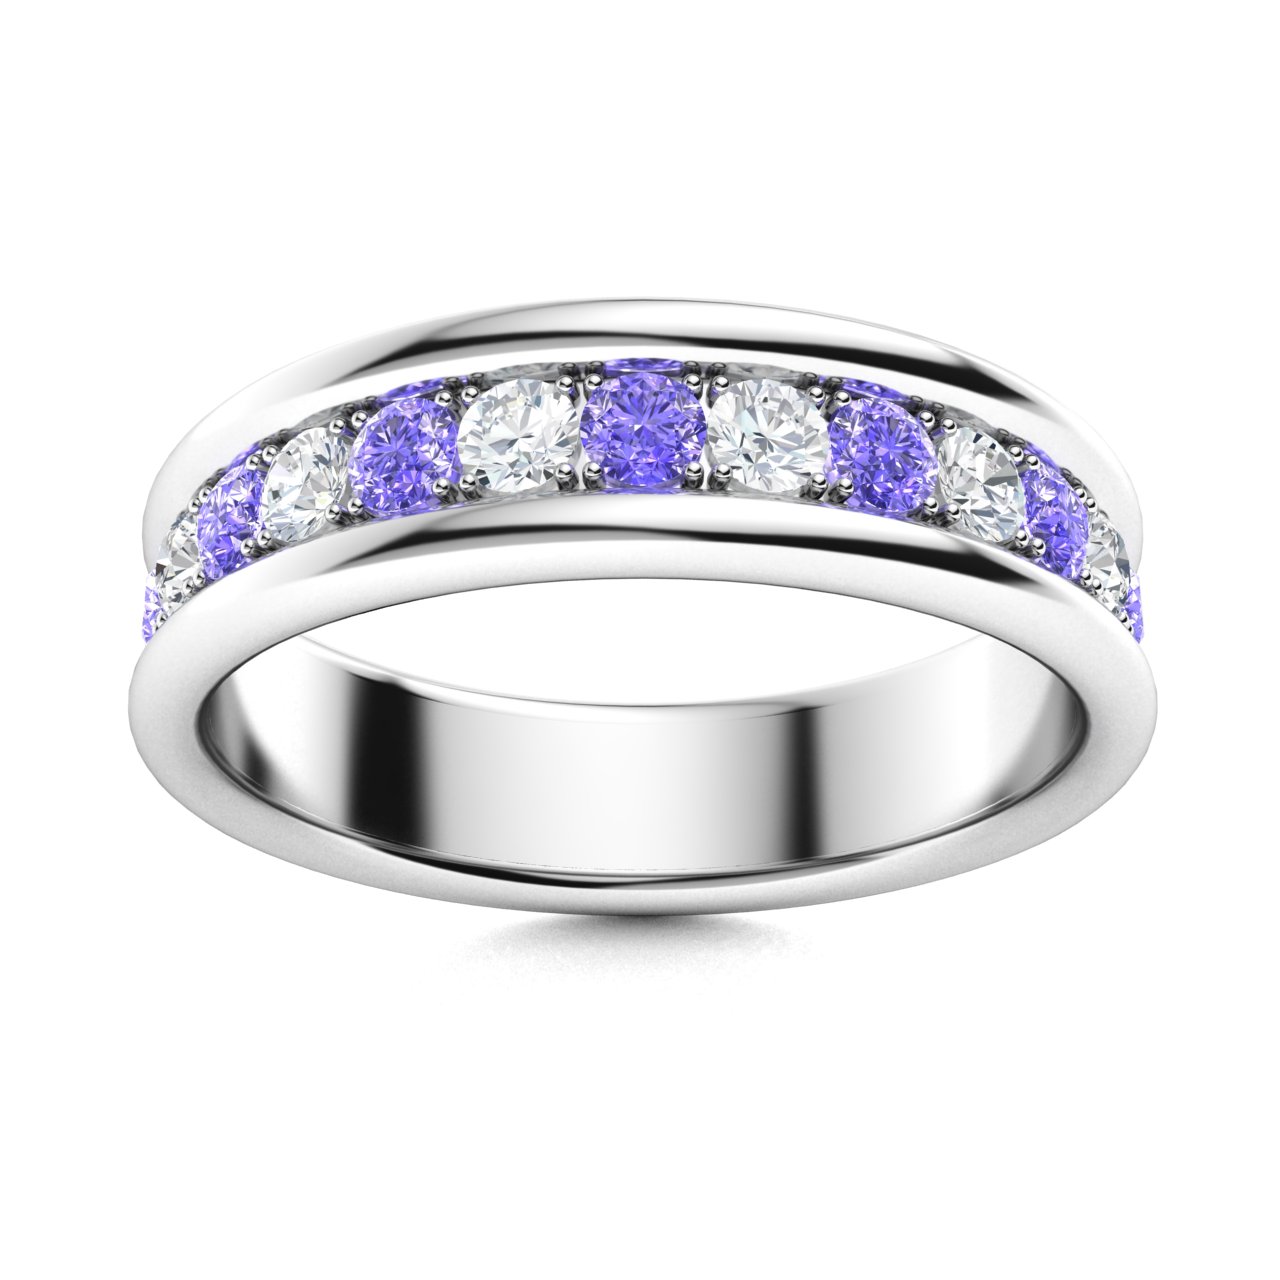 Jewellery Rings Wedding & Engagement Claddagh Rings Bridal Set Size 8 Celtic Black Rhodium Claddagh & Garnet Full Eternity Wedding Band 